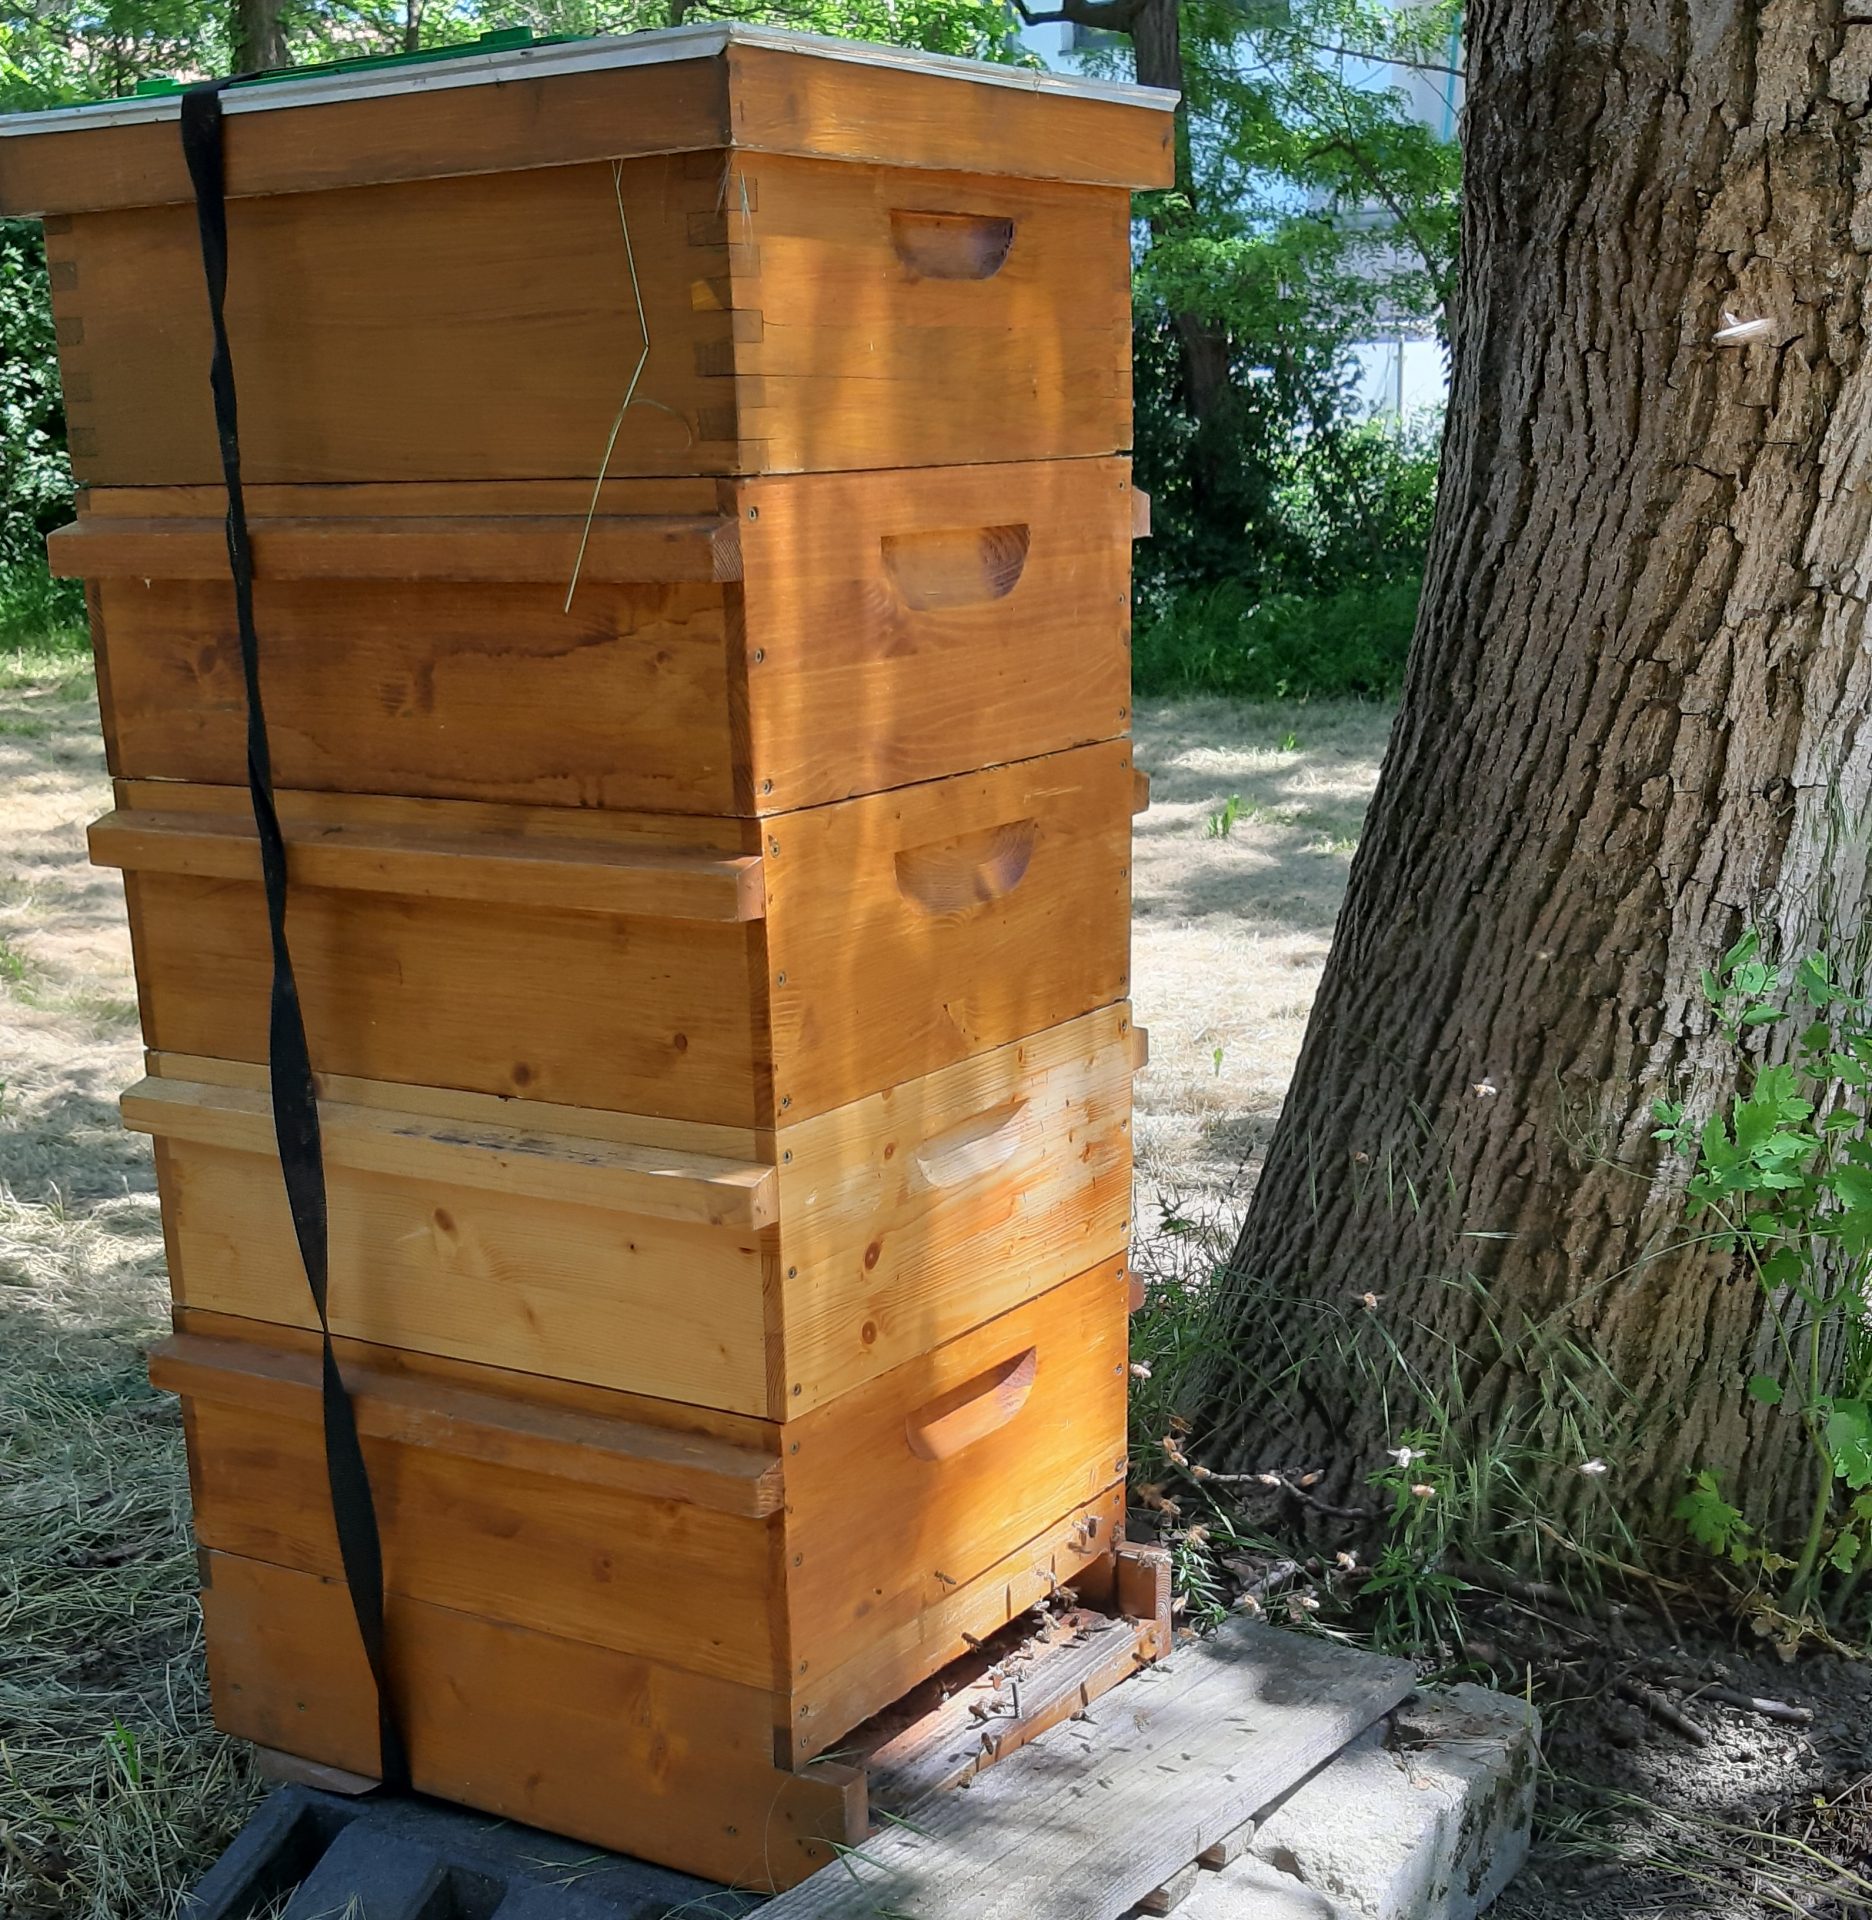 Bienenlehrpfad eröffnet